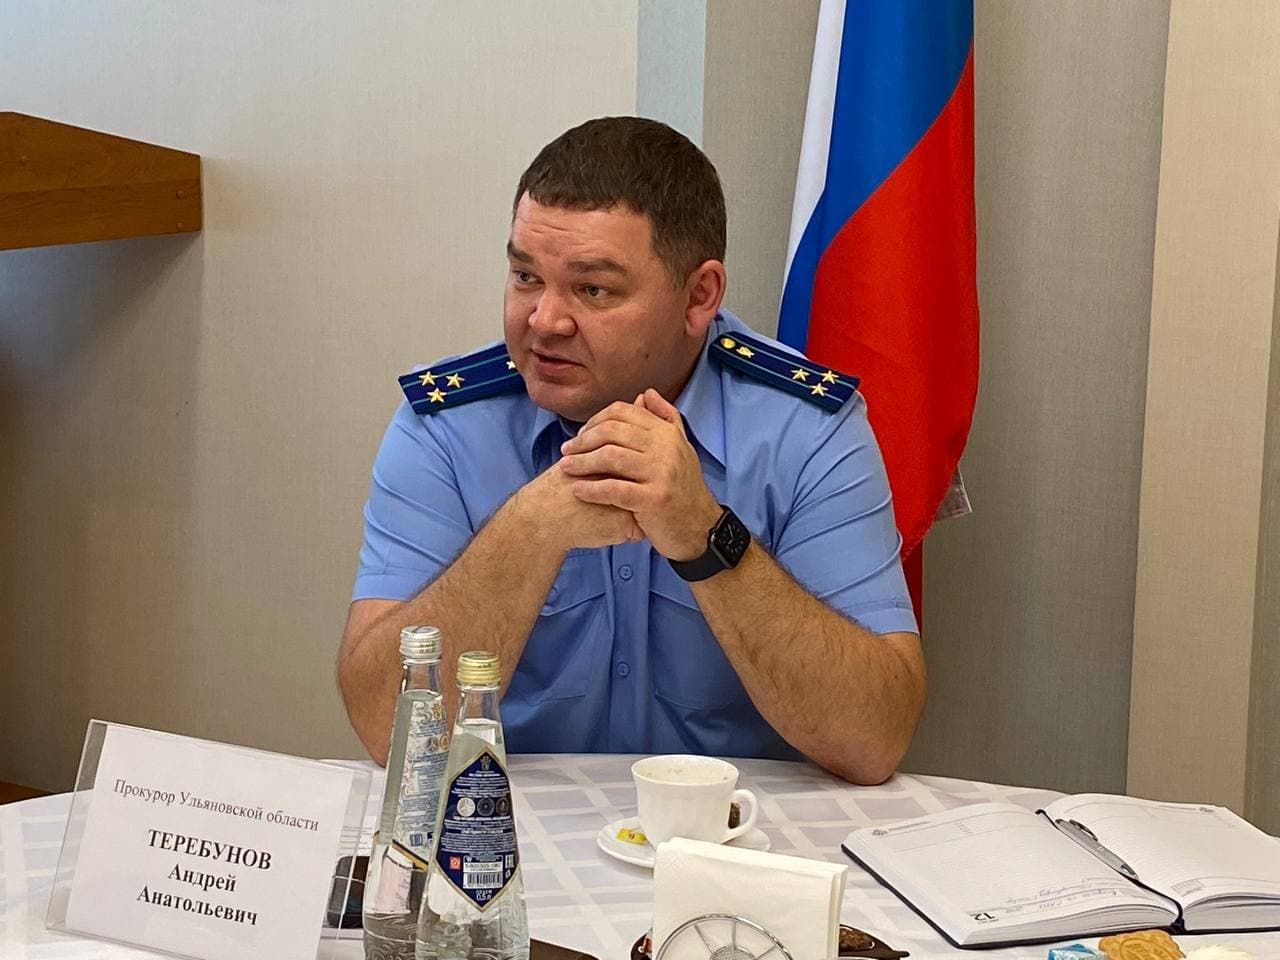 Прокурор Теребунов встретился с журналистами: рассказал о кадровых ротациях, новых посадках и любимых сериалах